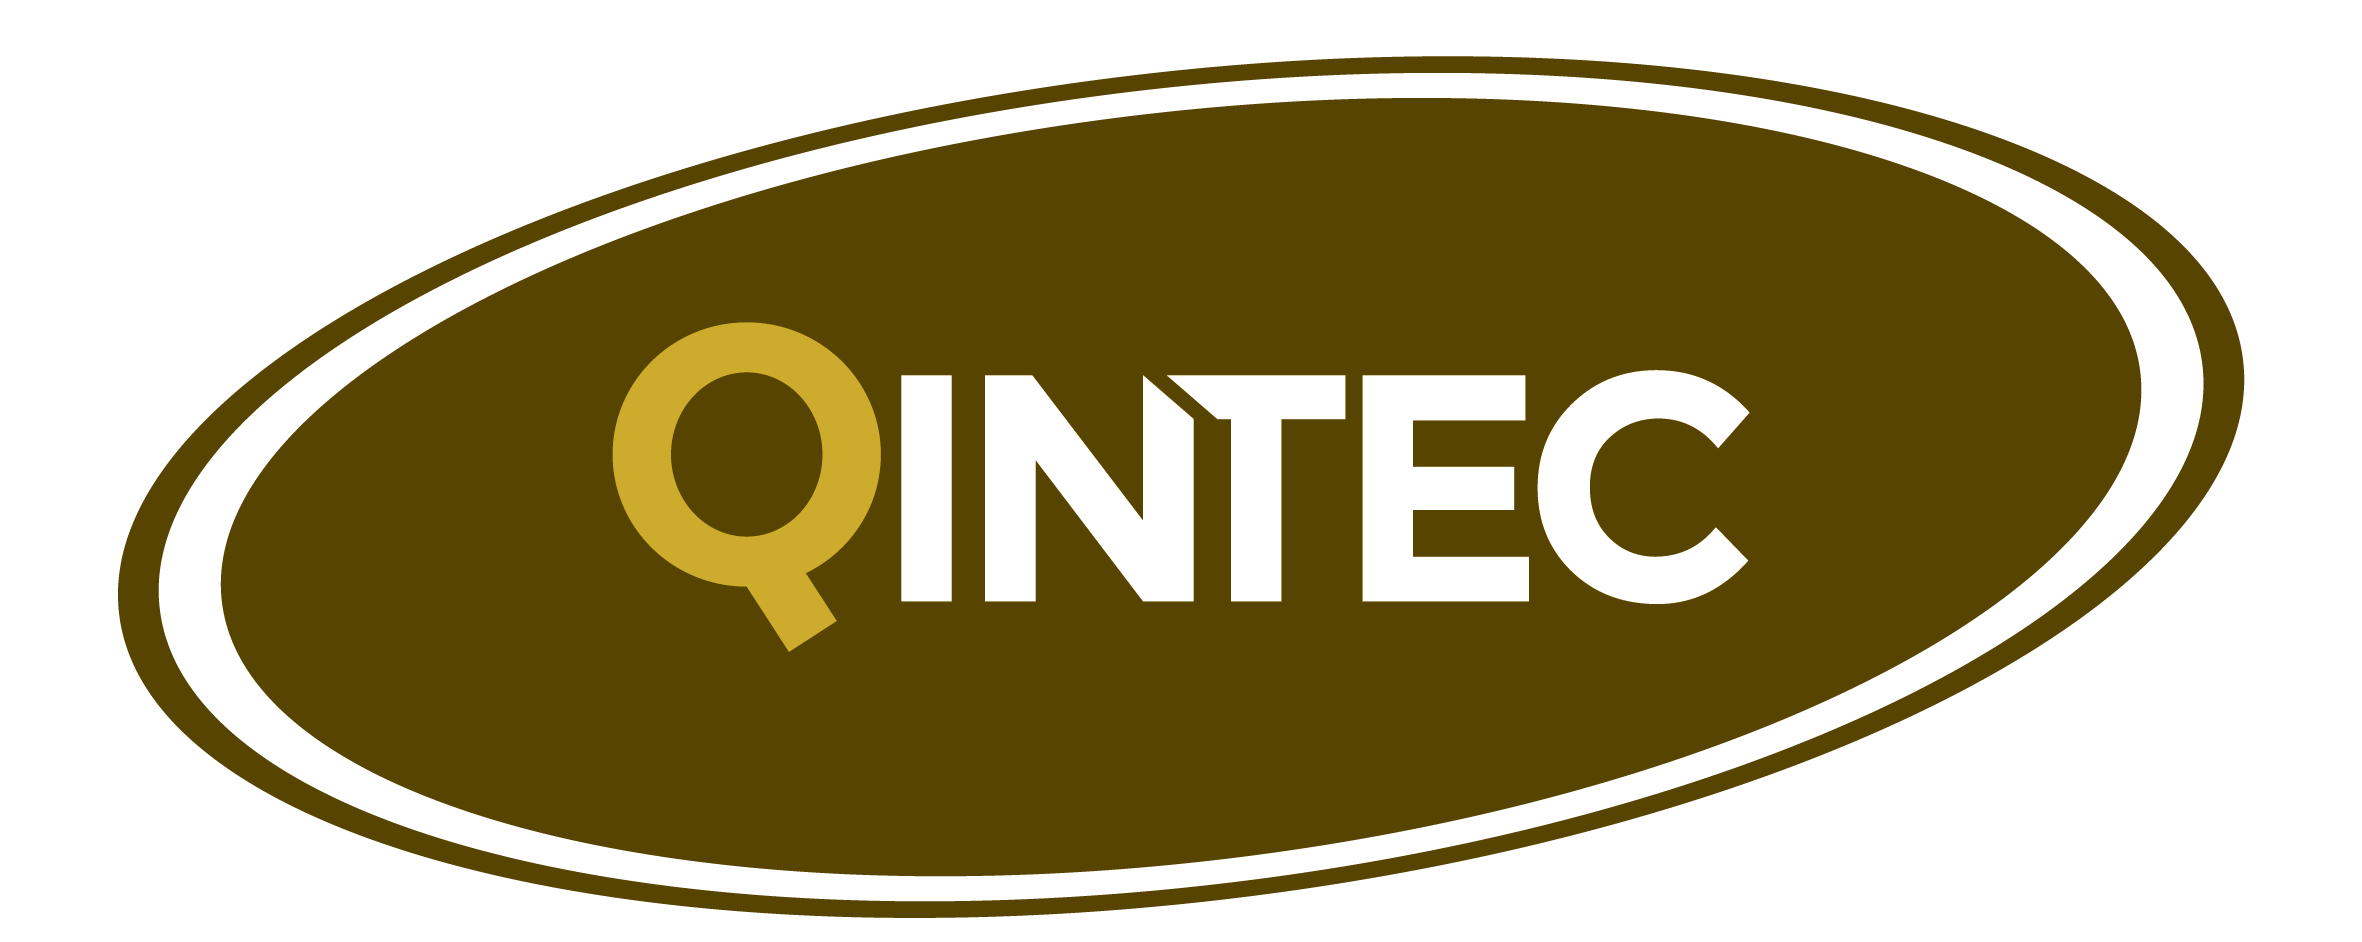 QINTEC Logo